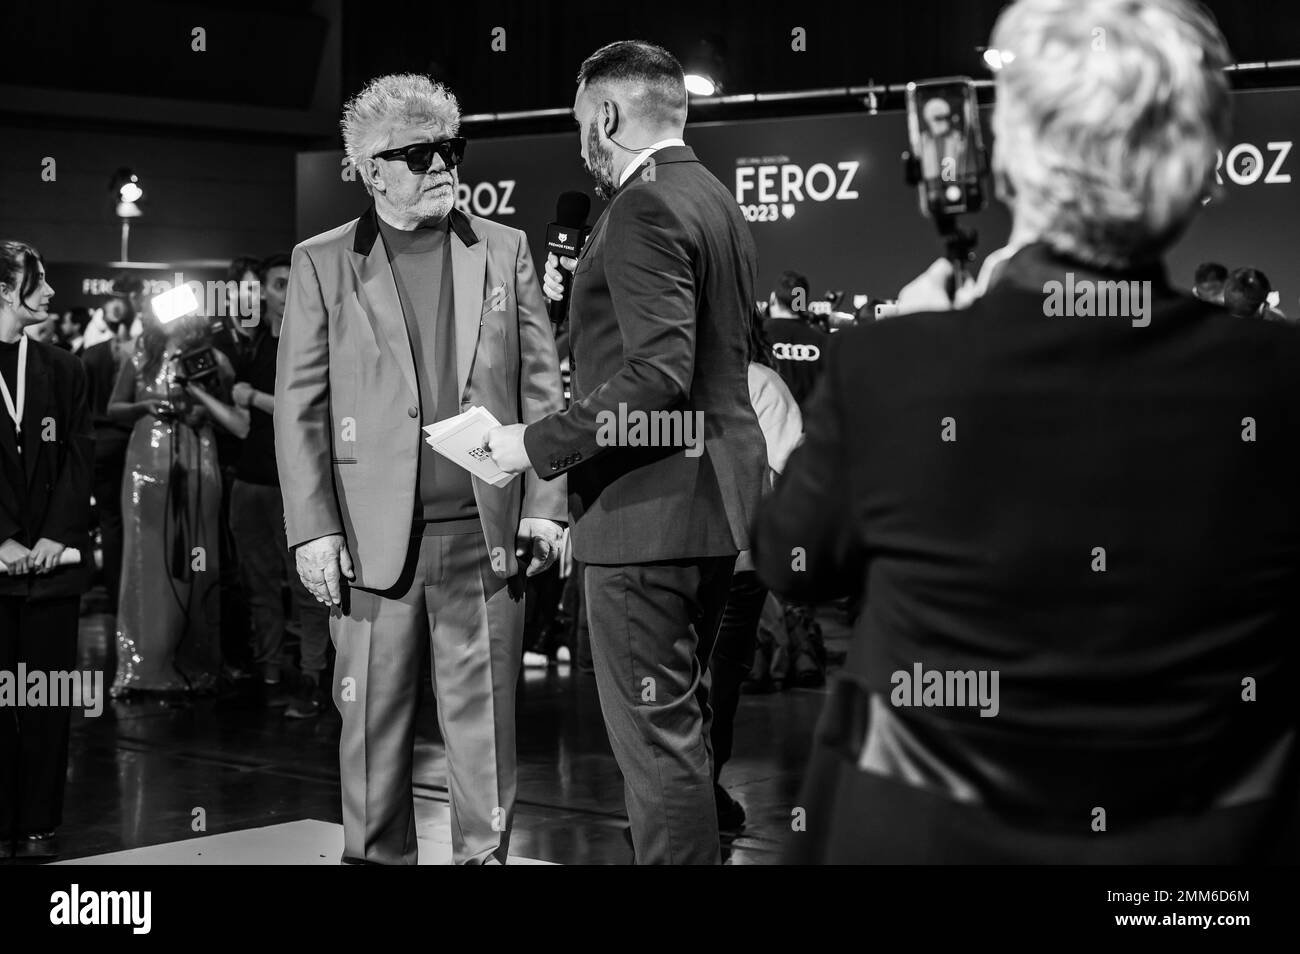 X edición de los Premios Feroz celebrados el pasado 28 de enero en Zaragoza, España. Lo mejor de la producción audiovisual española del año. Stock Photo